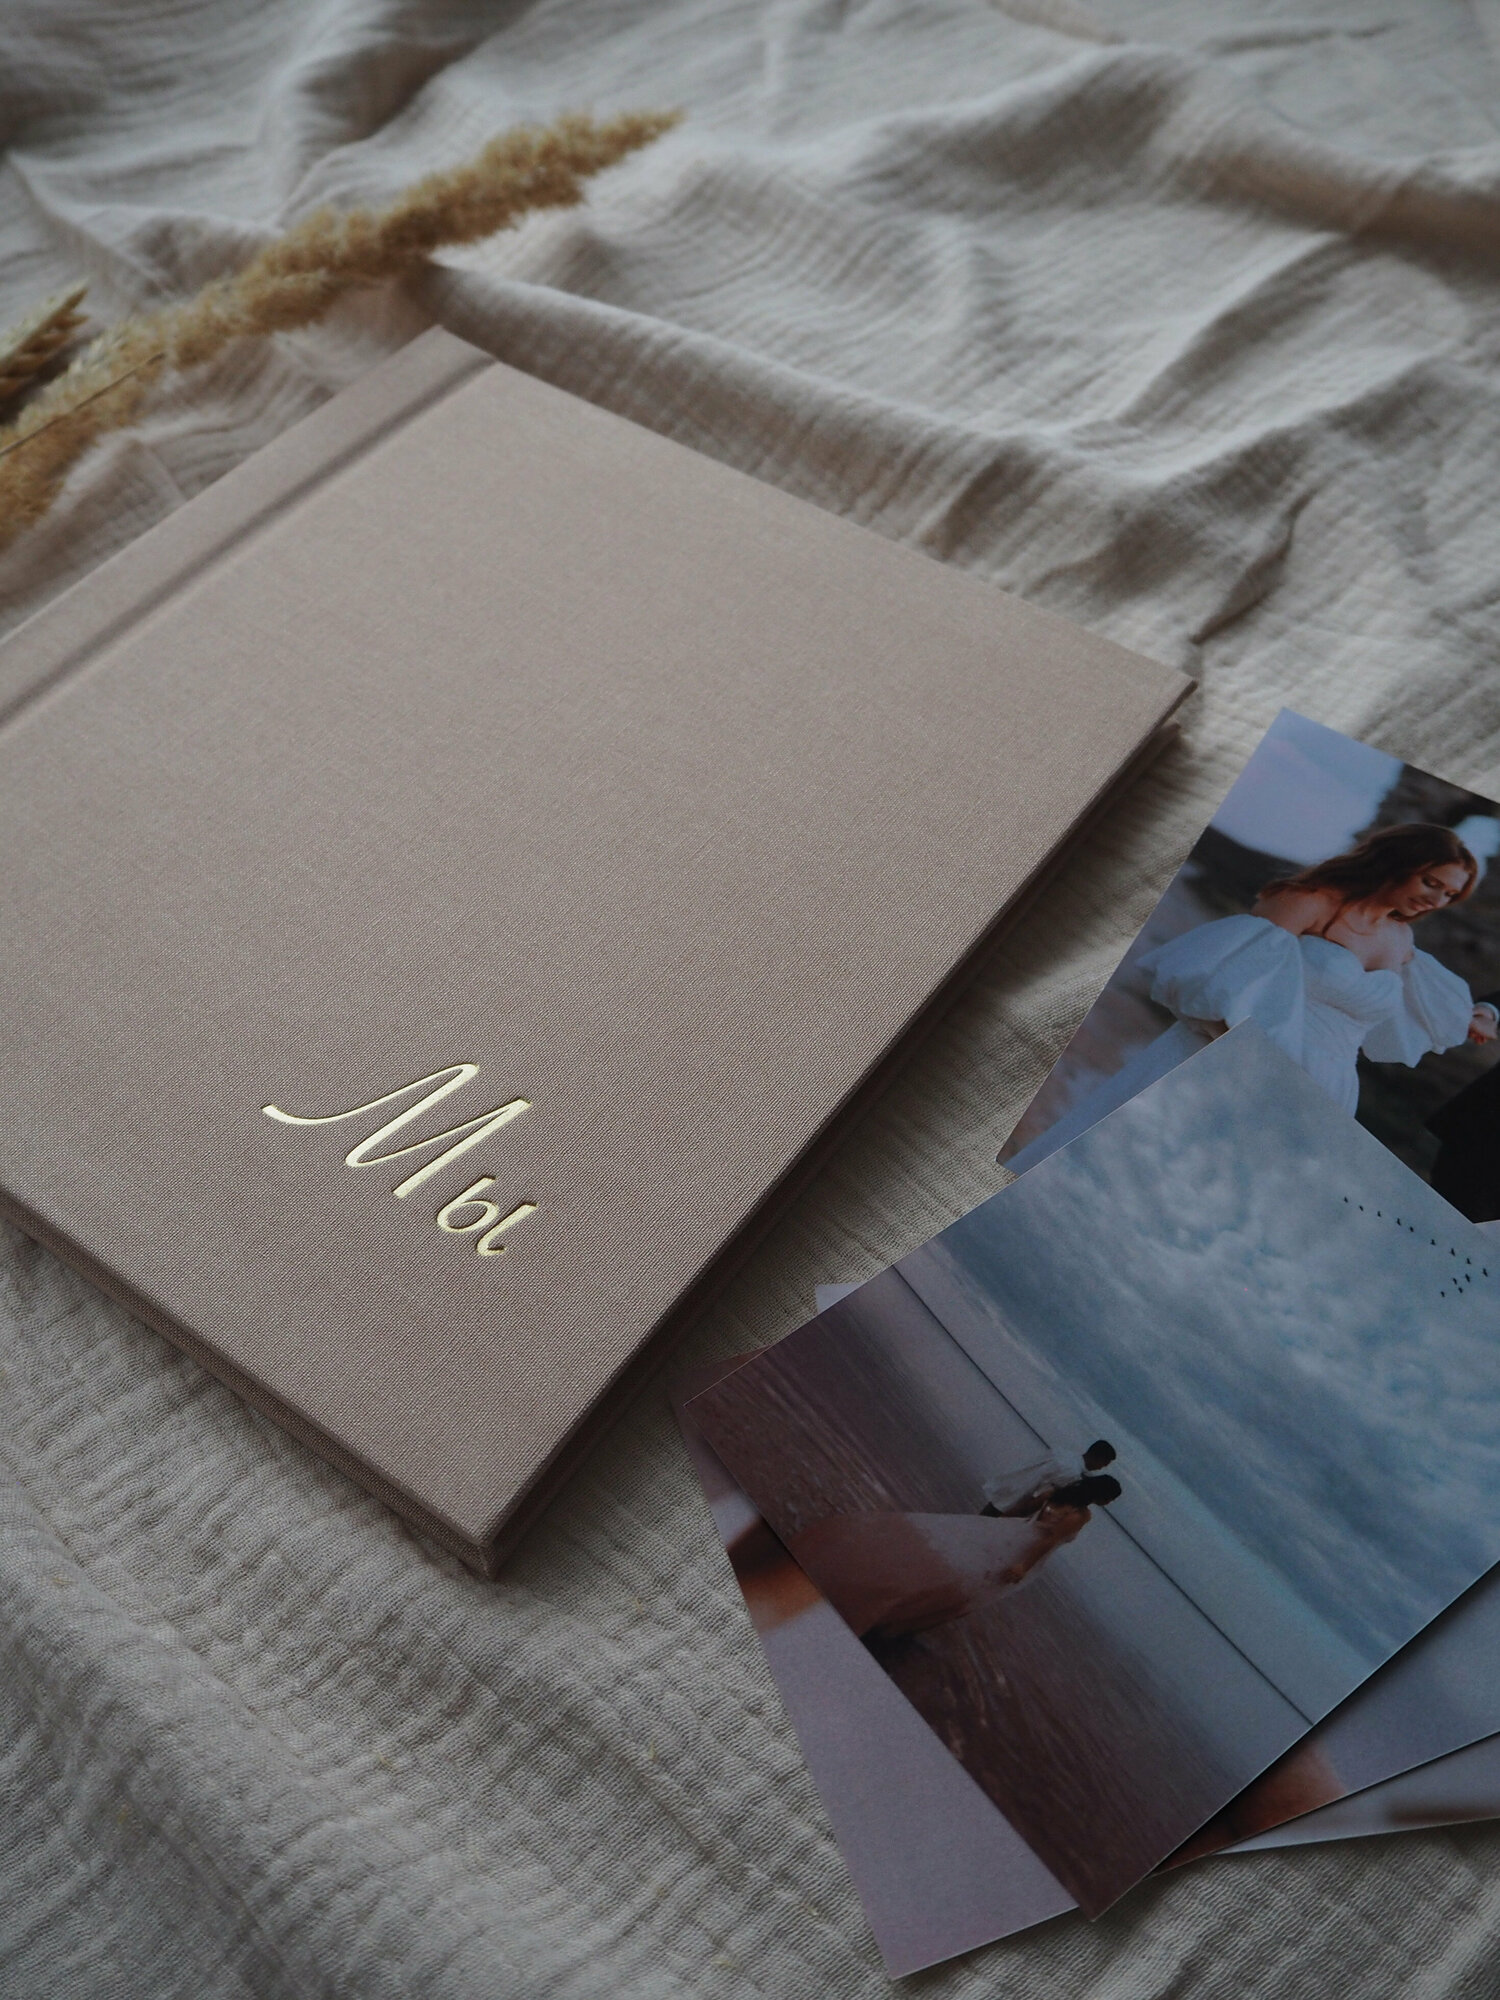 Семейный/свадебный/детский фотоальбом "Мы" для фотографий и записей. Для себя и в подарок.